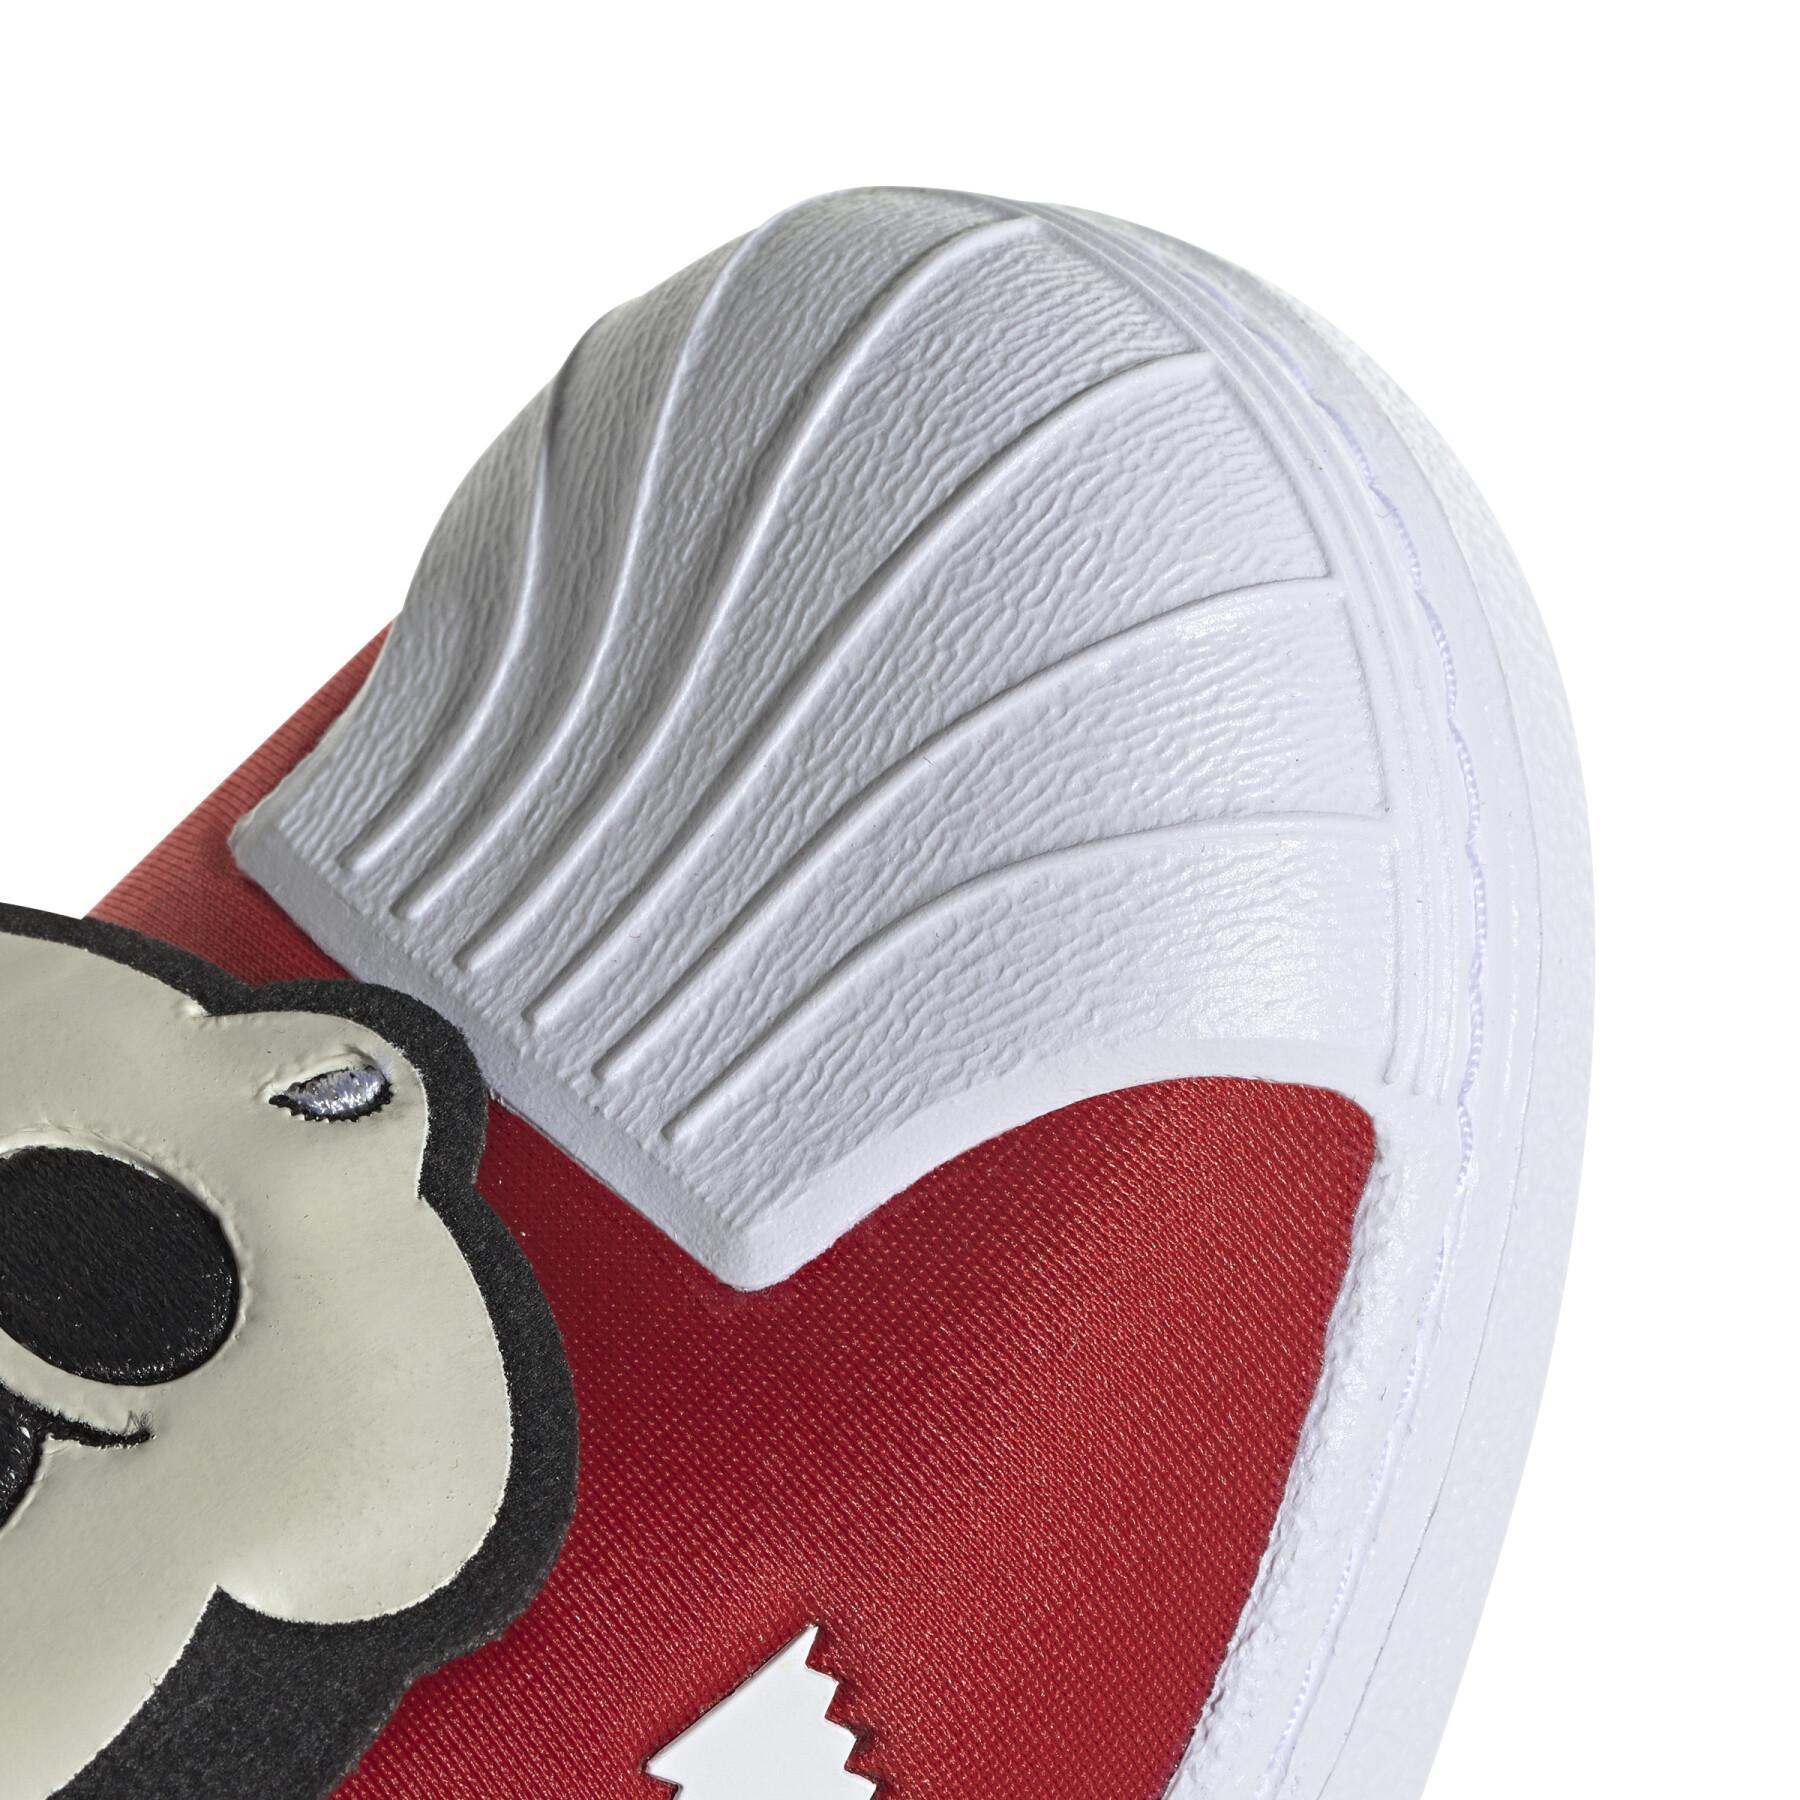 Scarpe da ginnastica per bambini adidas Originals Disney Superstar 360